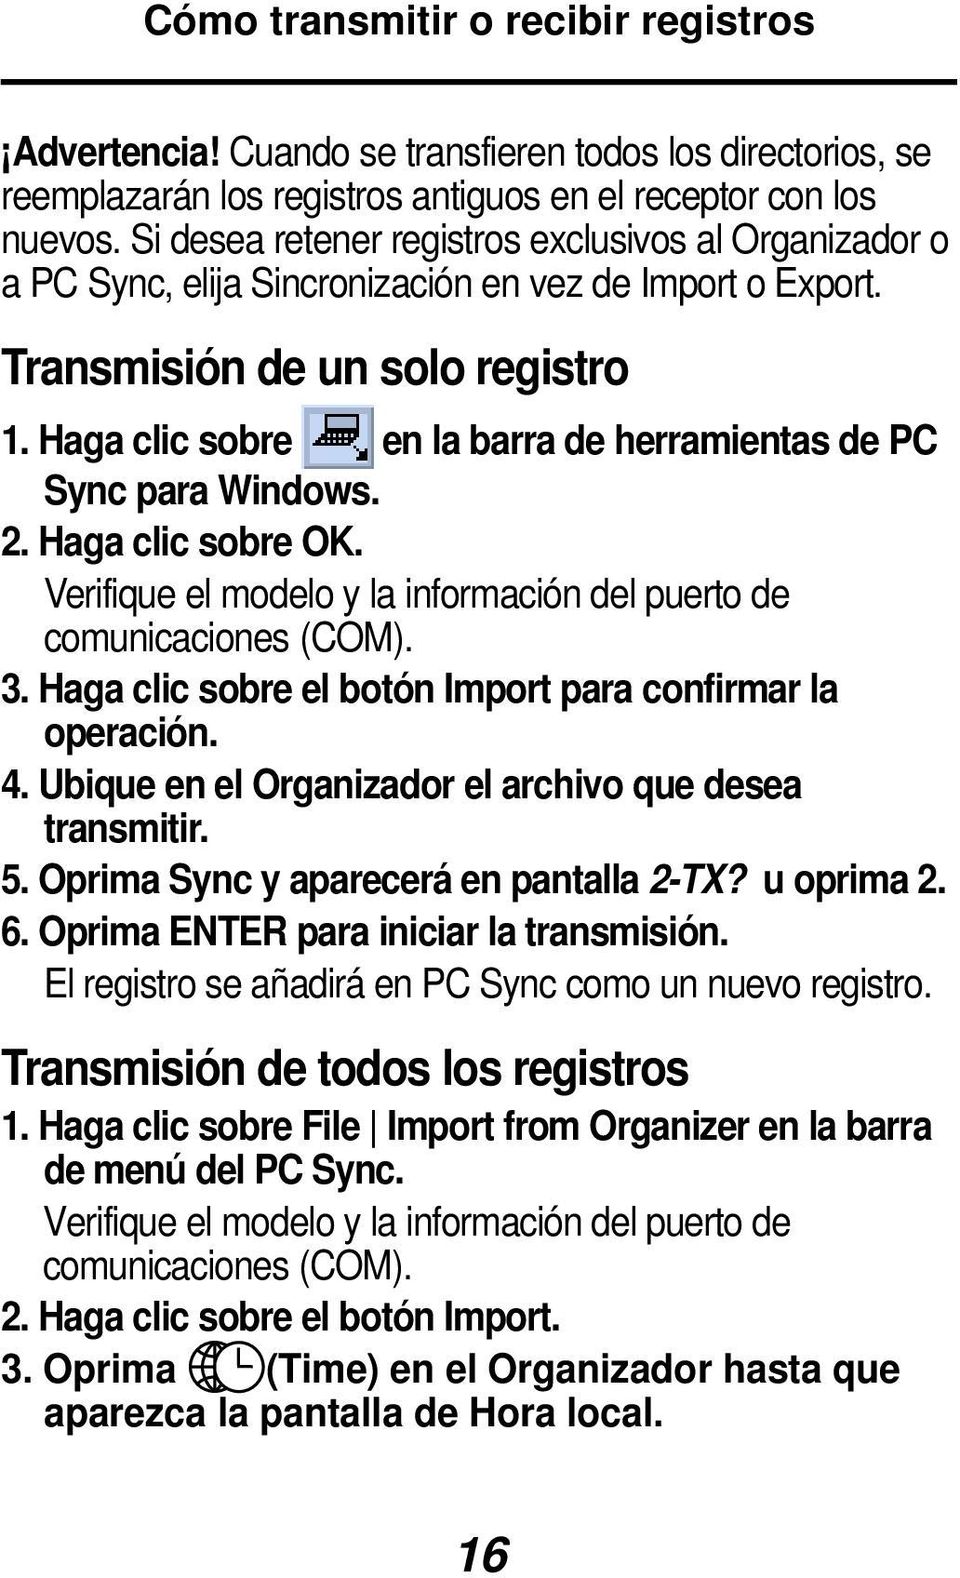 Haga clic sobre en la barra de herramientas de PC Sync para Windows. 2. Haga clic sobre OK. Verifique el modelo y la información del puerto de comunicaciones (COM). 3.